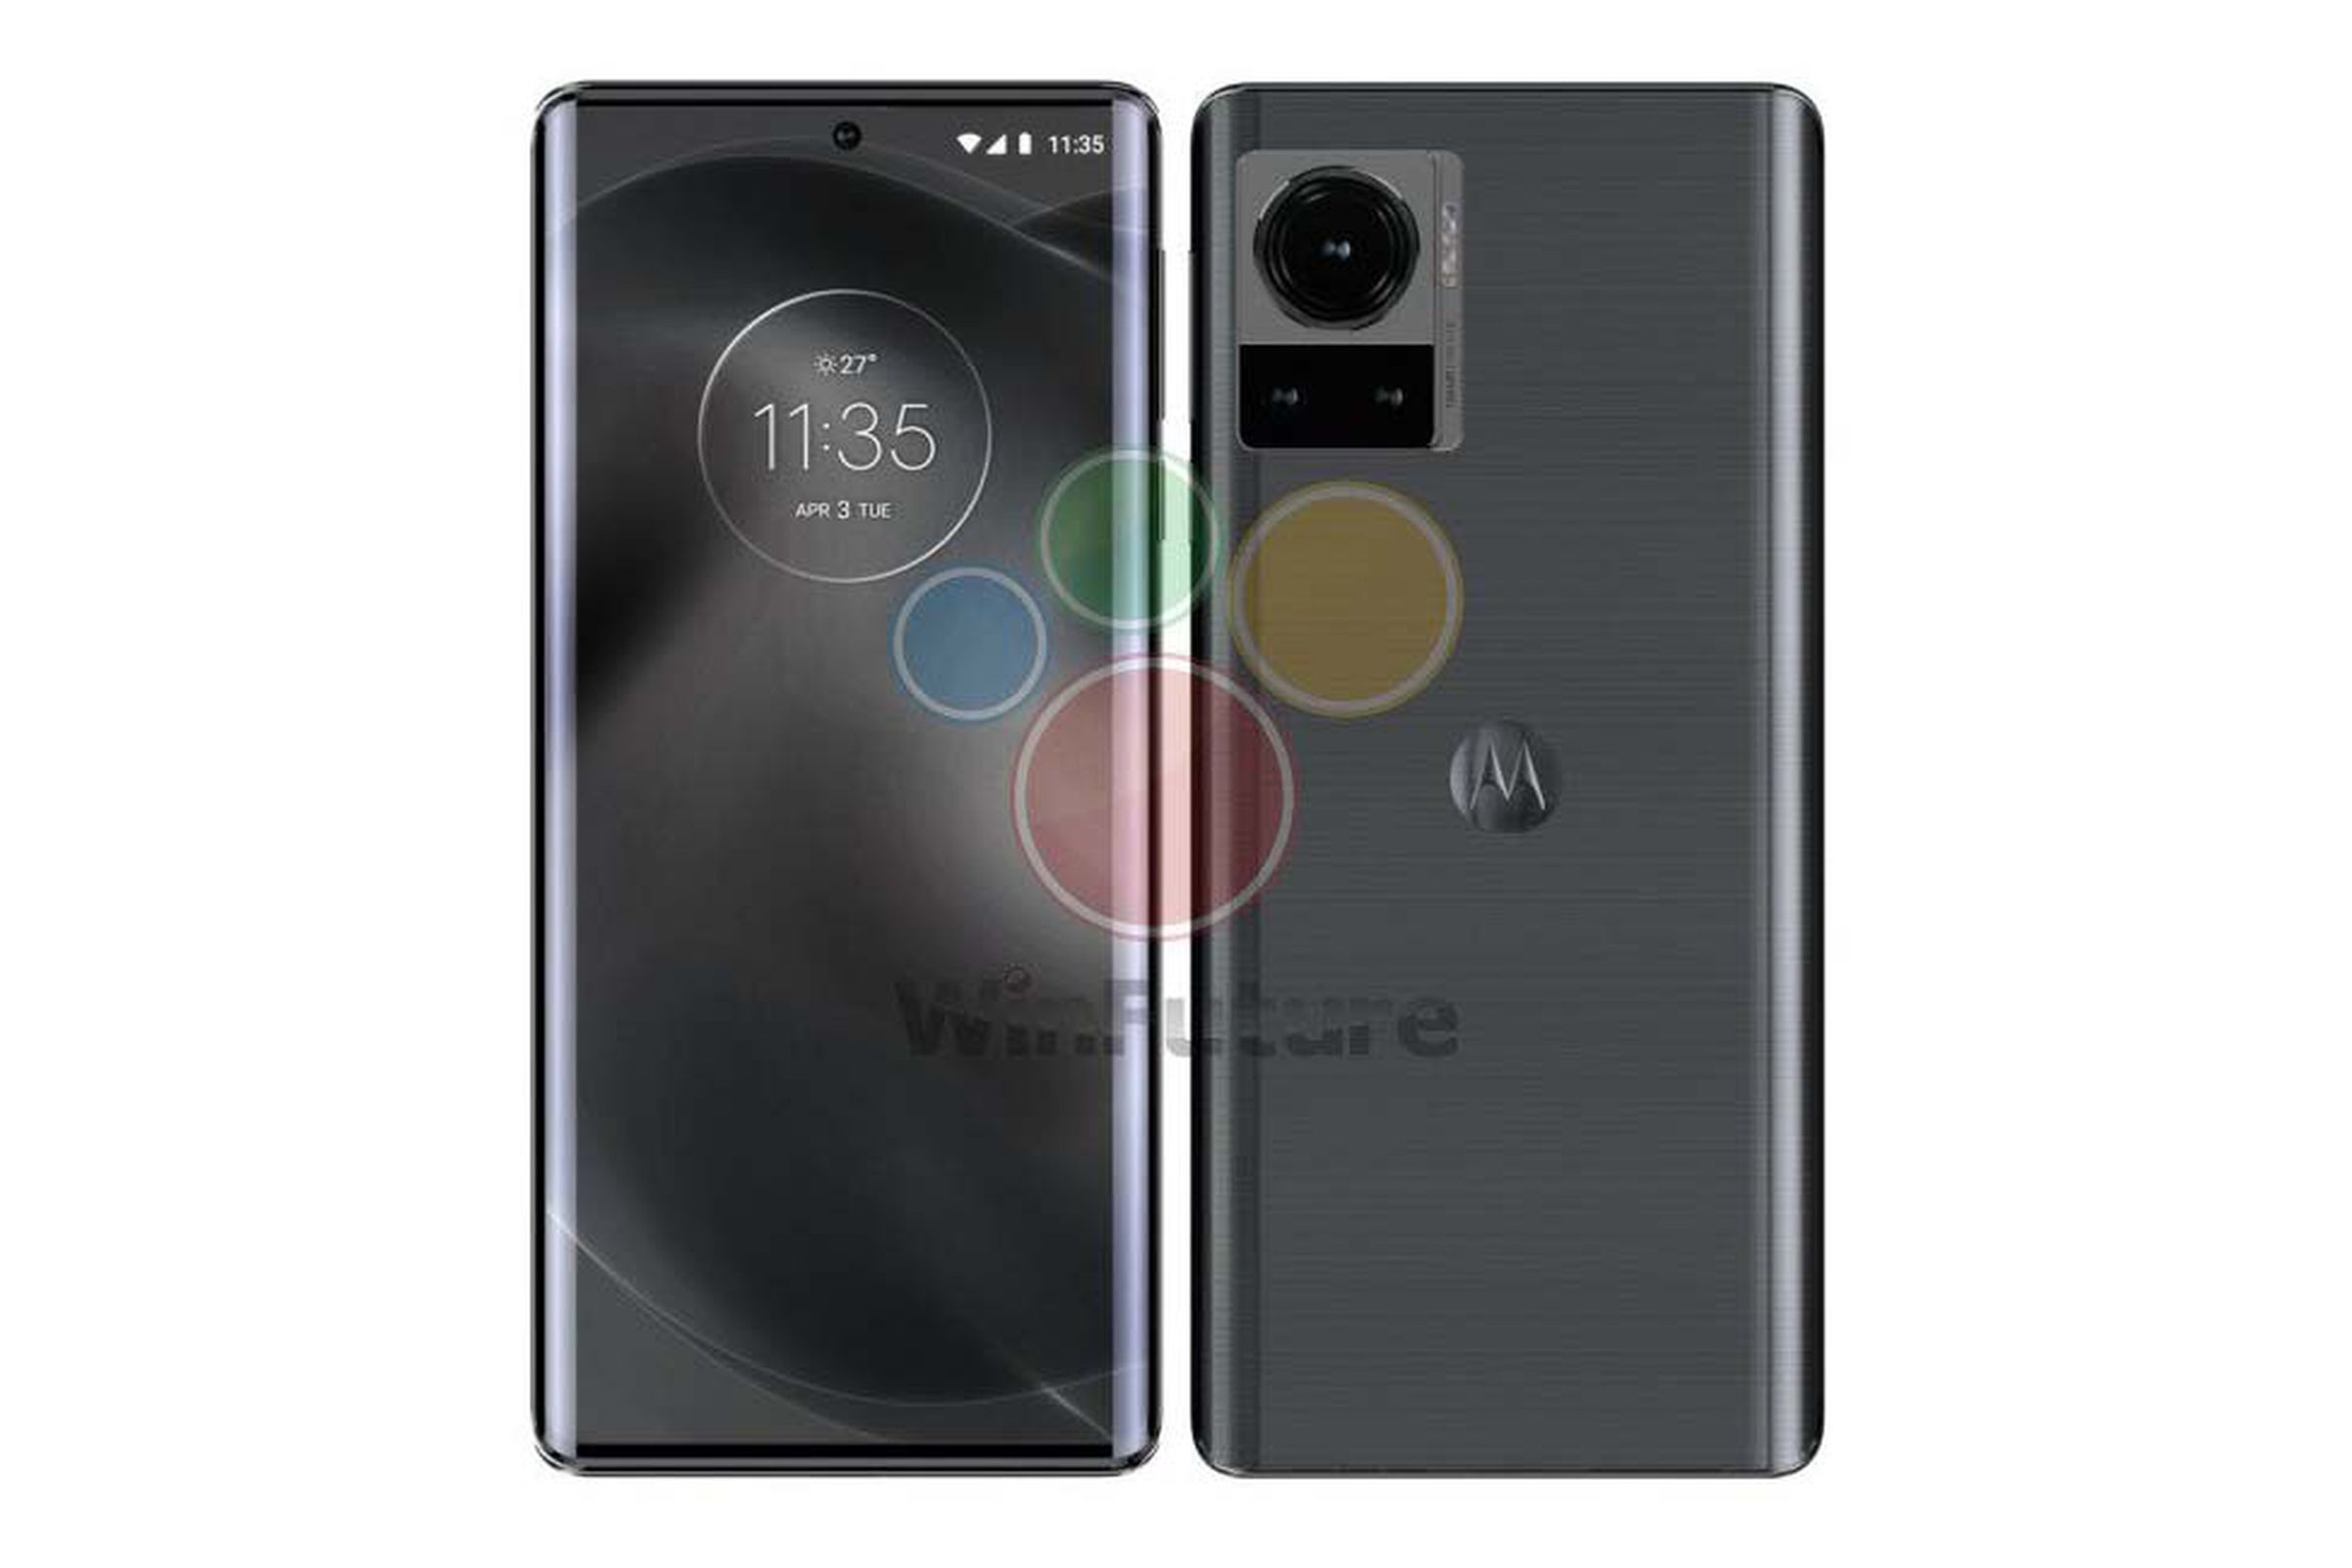 Leaked renders of Motorola’s rumored smartphone.